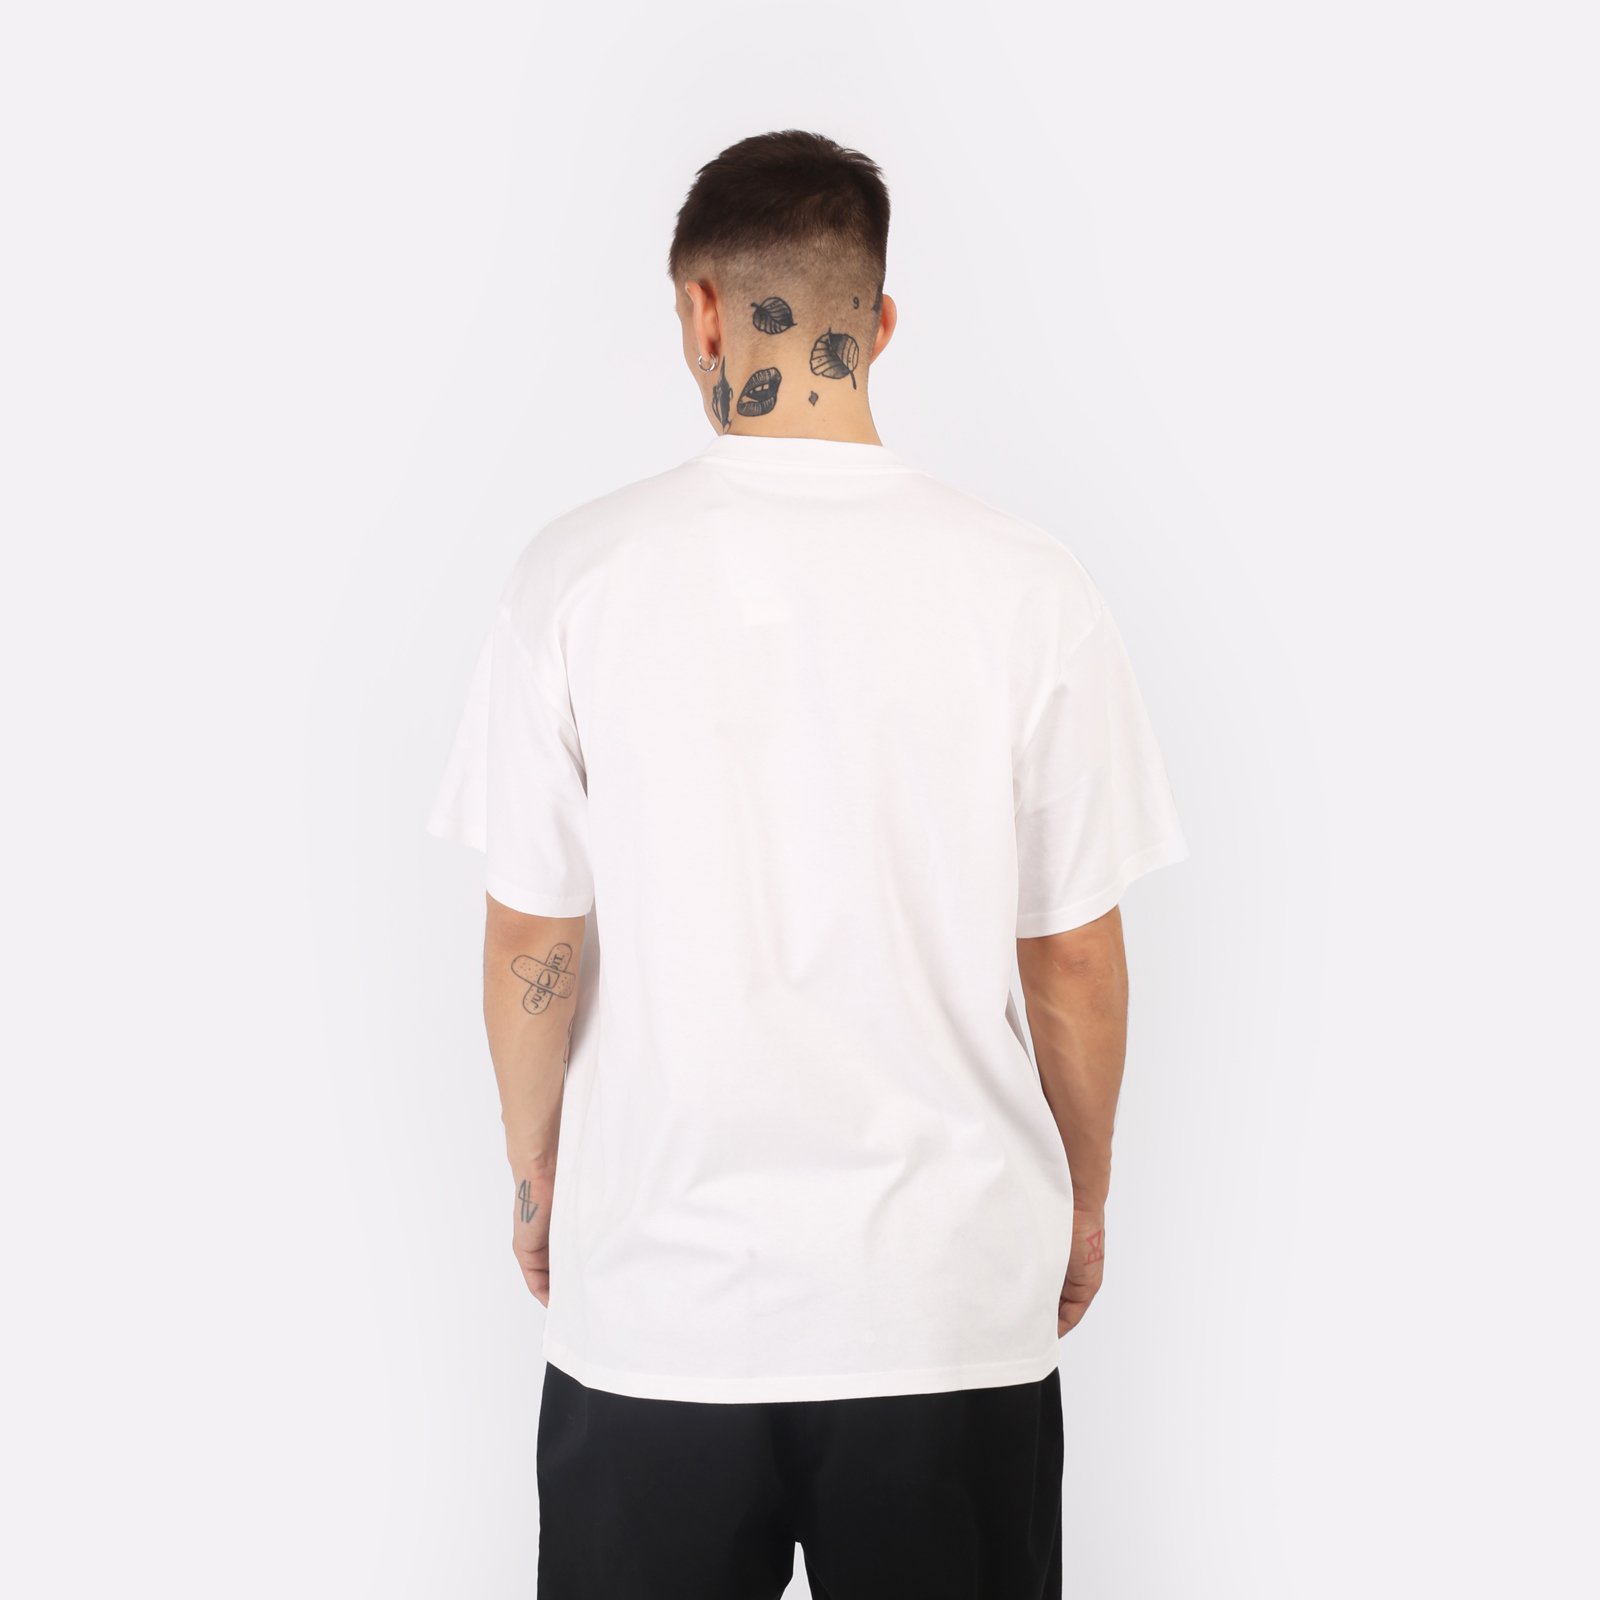 мужская футболка Carhartt WIP S/S Smart Sports T-Shirt  (I033121-white)  - цена, описание, фото 2